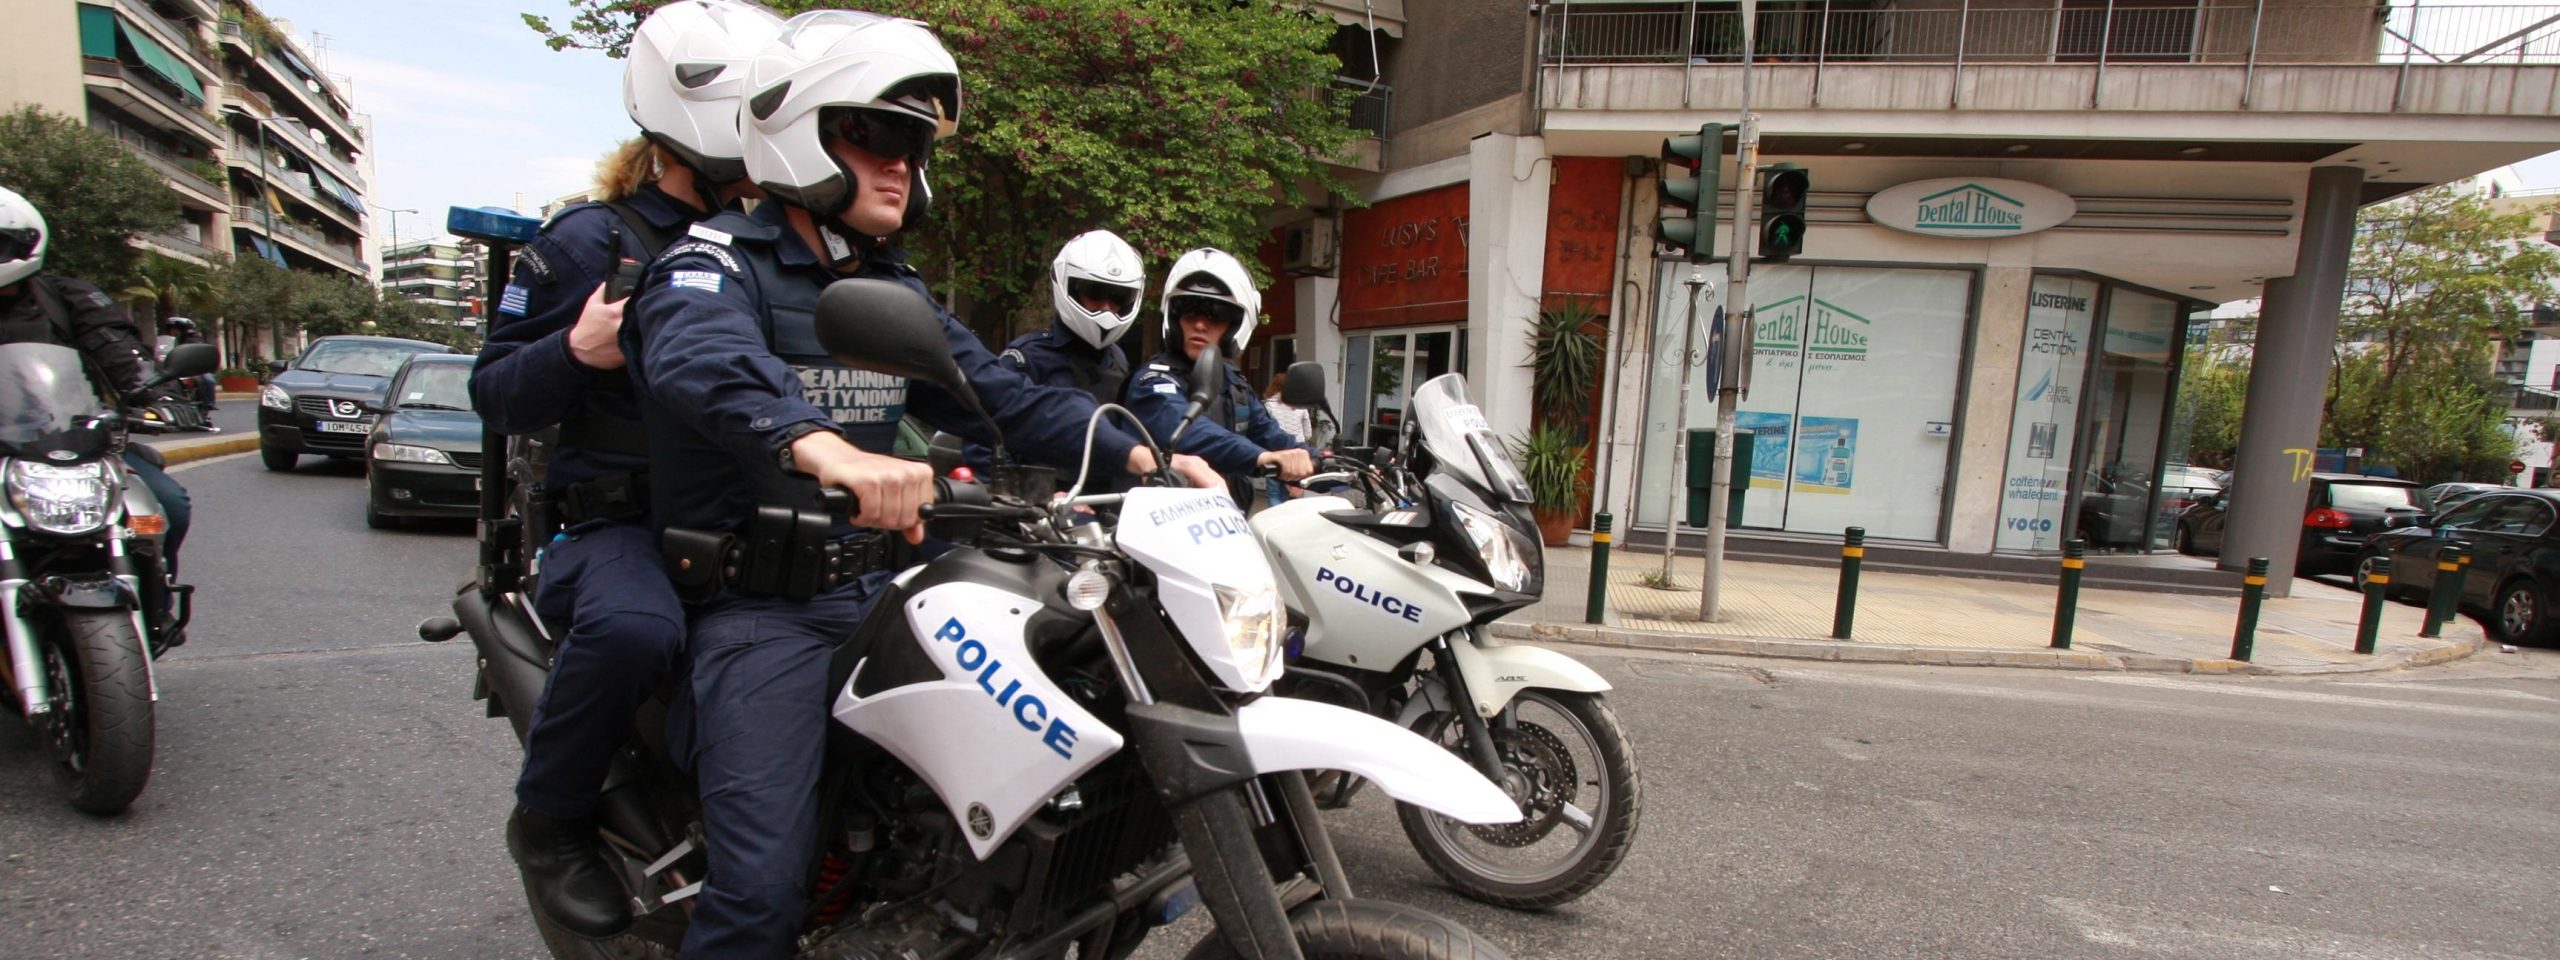 Μετά την «Δέλτα» διαλύουν και την ΔΙ.ΑΣ: Χωρίς κέντρο διαβιβάσεων η δίκυκλη αστυνόμευση στην Αθήνα!